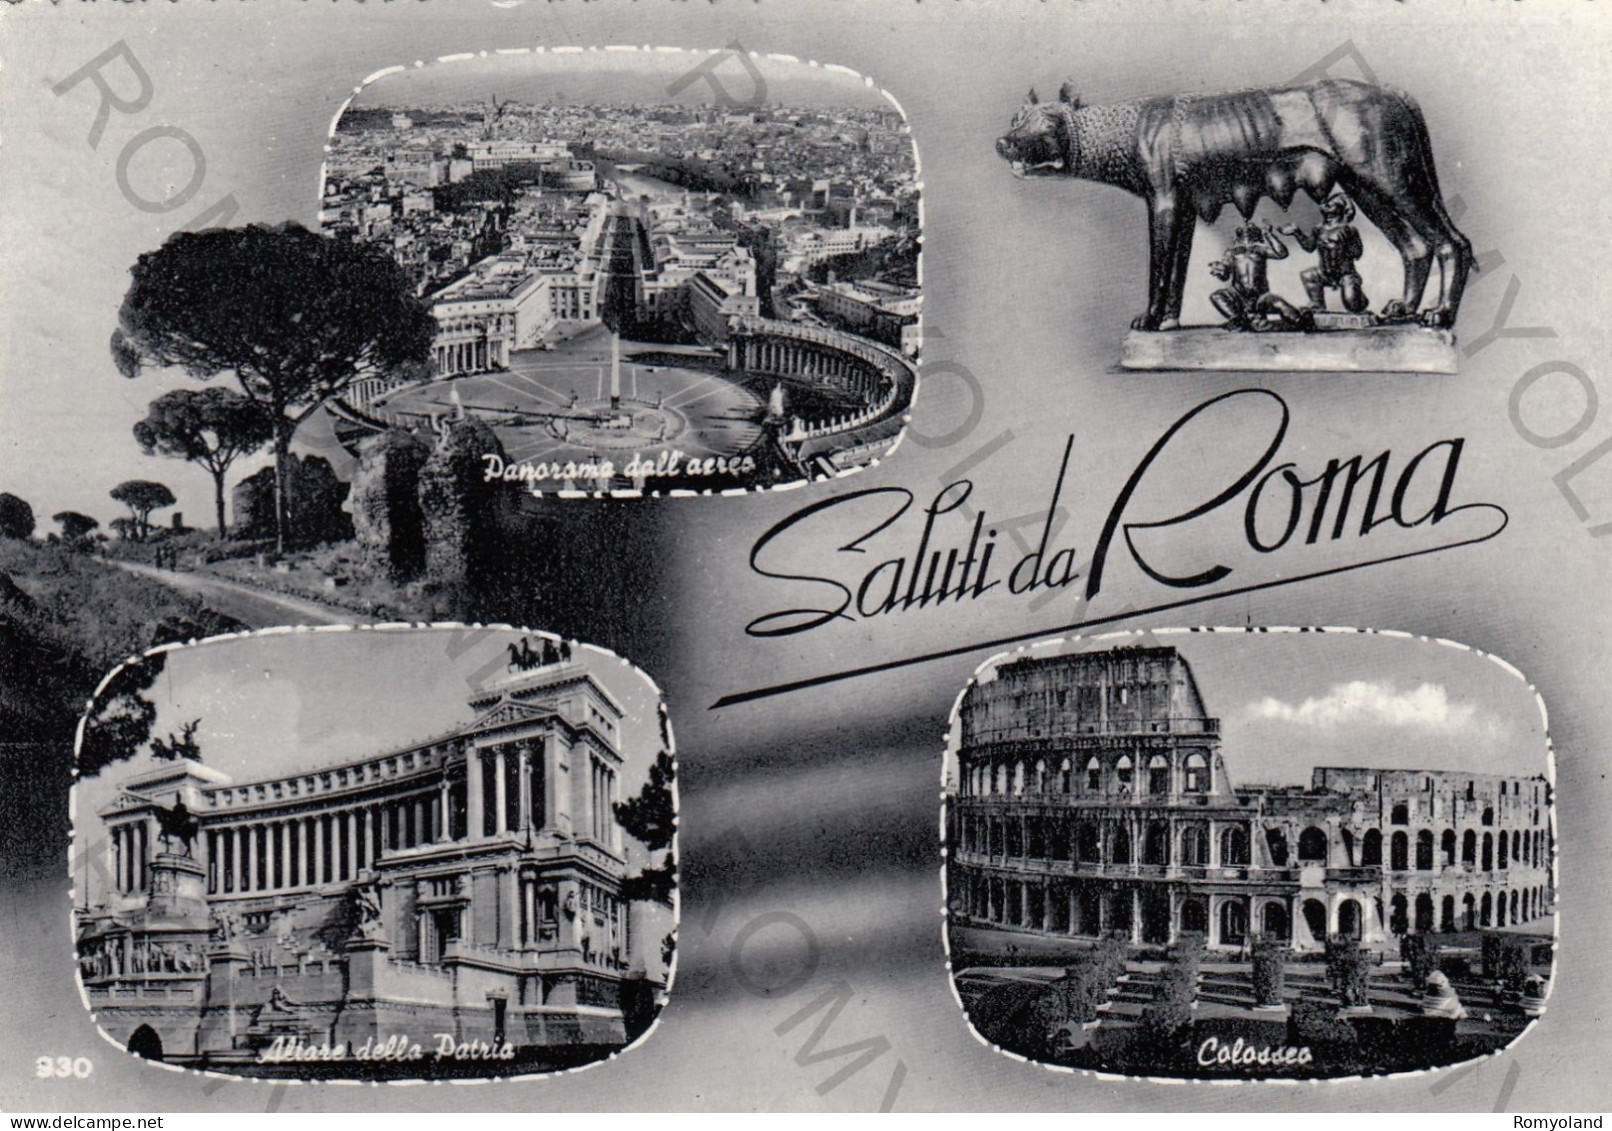 CARTOLINA  B7 ROMA,LAZIO-SALUTI DA ROMA-ALTARE DELLA PATRIA-COLOSSEO-PANORAMA DALL'AEREO-STORIA,CULTURA,VIAGGIATA 1965 - Kolosseum